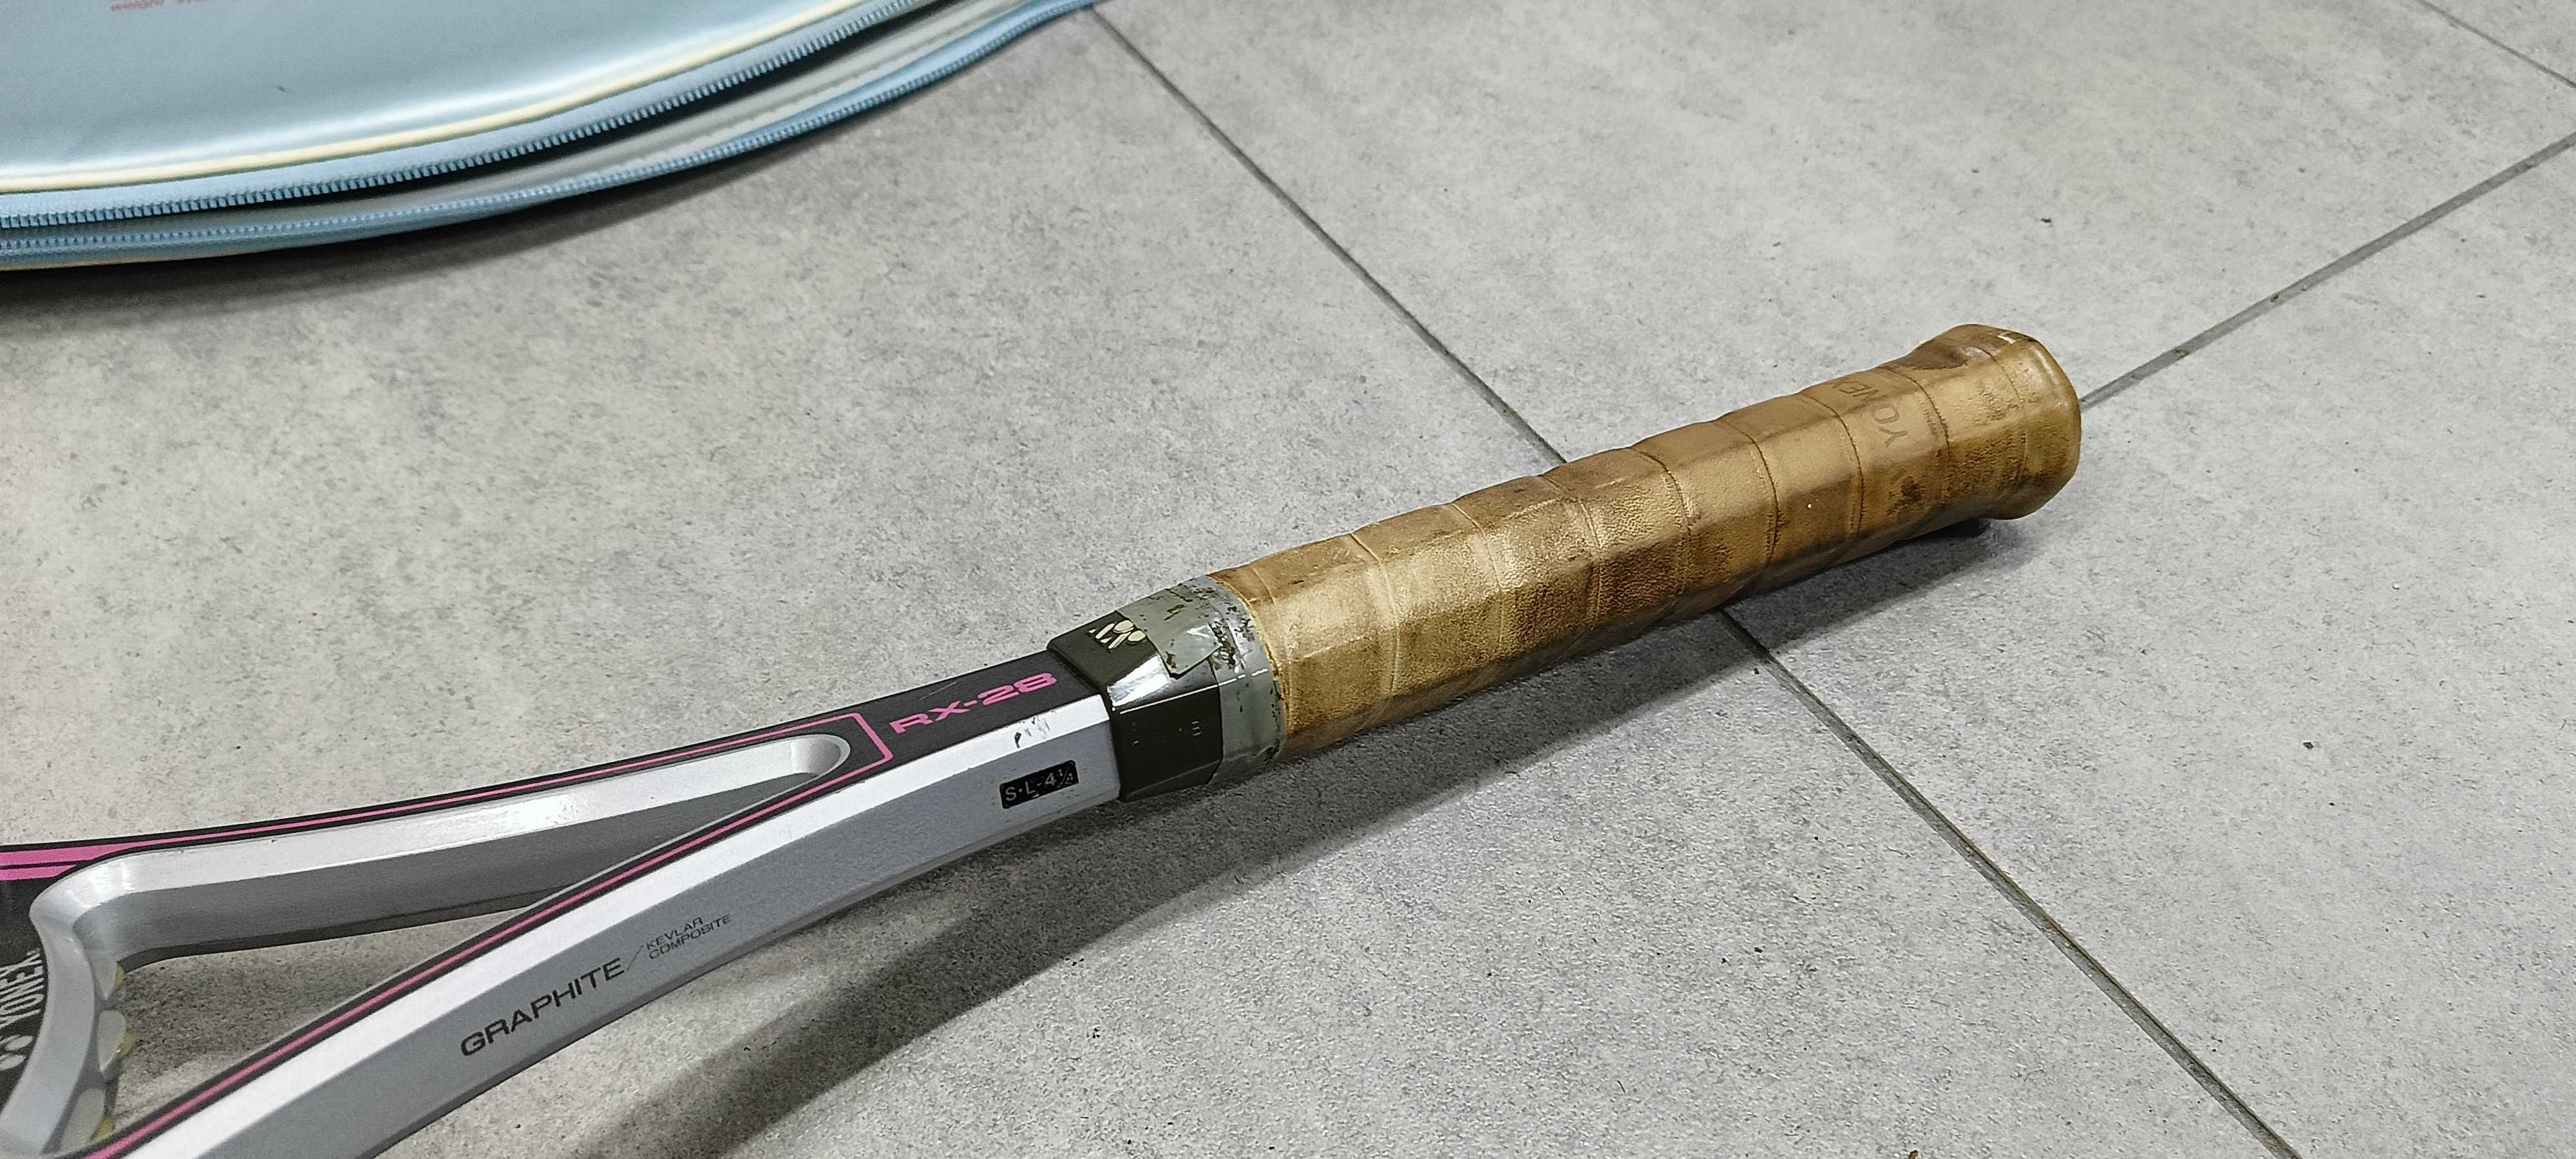 Yonex Rexking RX-28 rakieta tenisowa L2 tenis